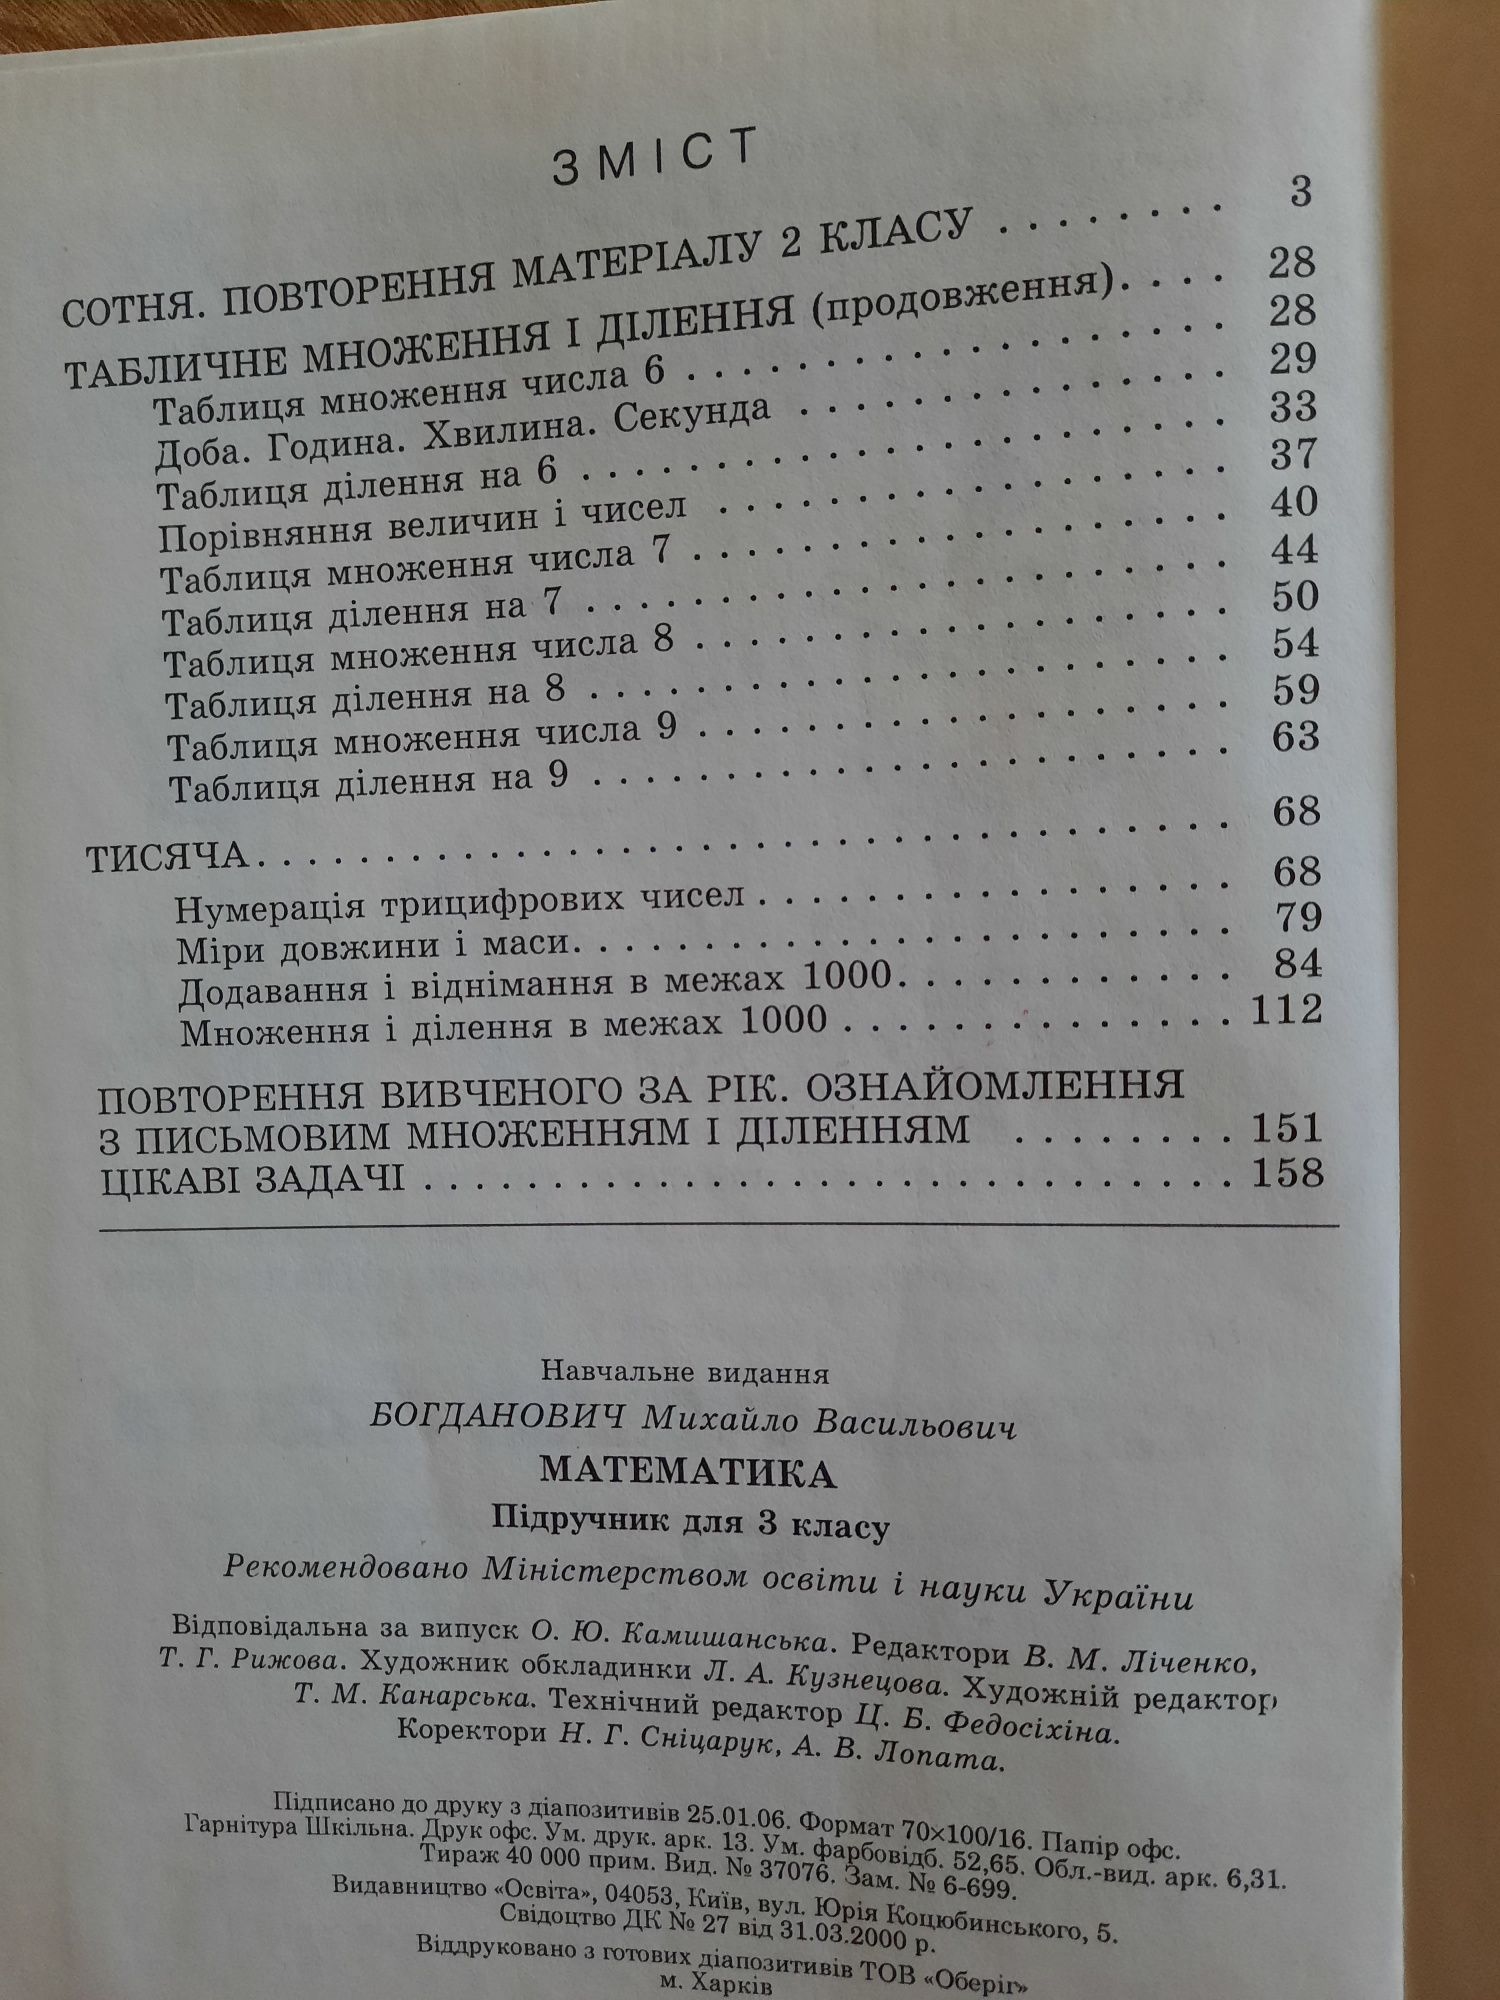 Підручник Математика 3 клас М. В. Богданович